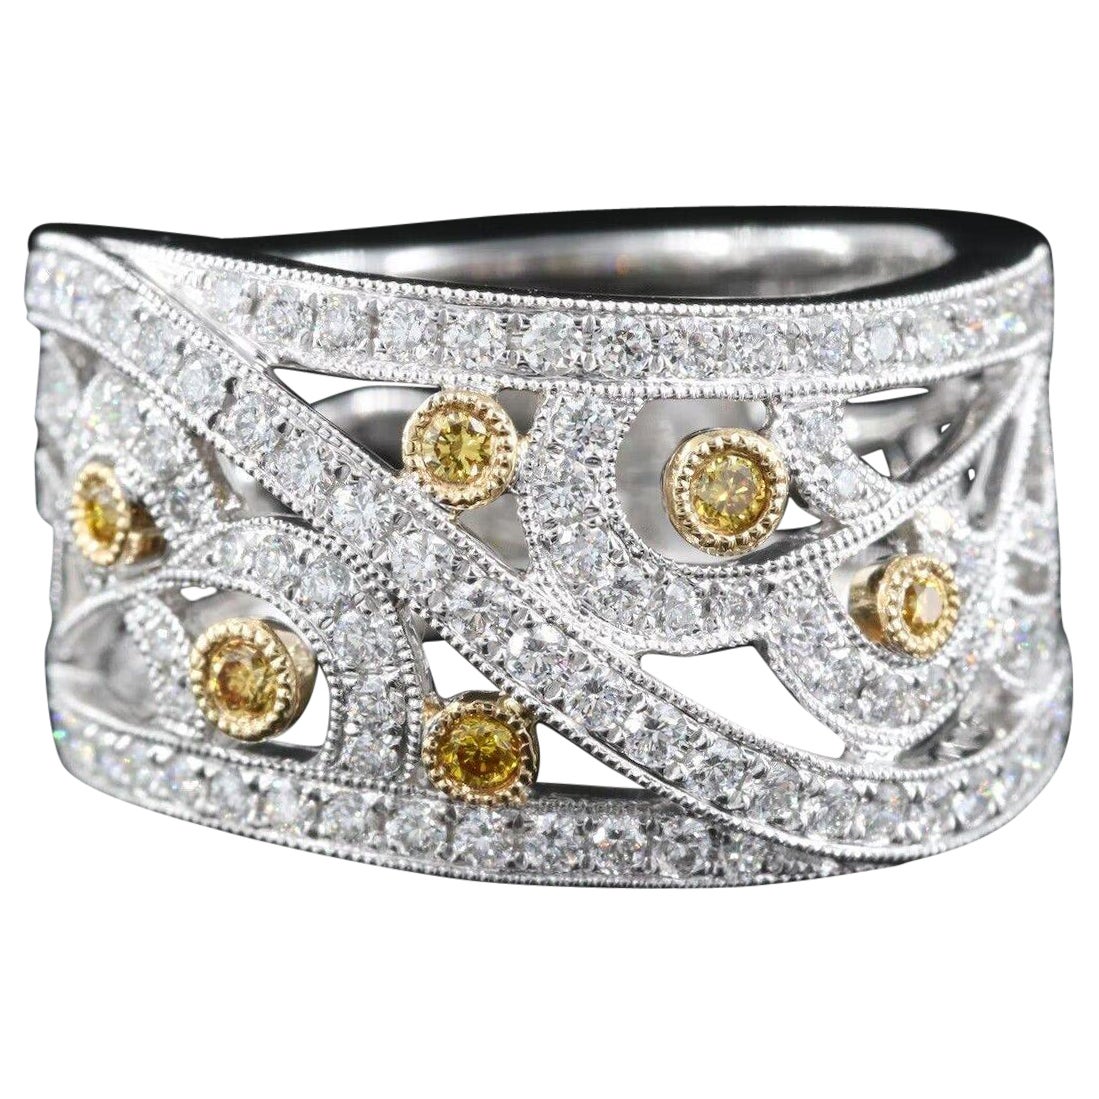 $9500 / New / Jye’s Designer 1.03 Ct Diamond Ring / 18K White Gold / Super Fancy For Sale